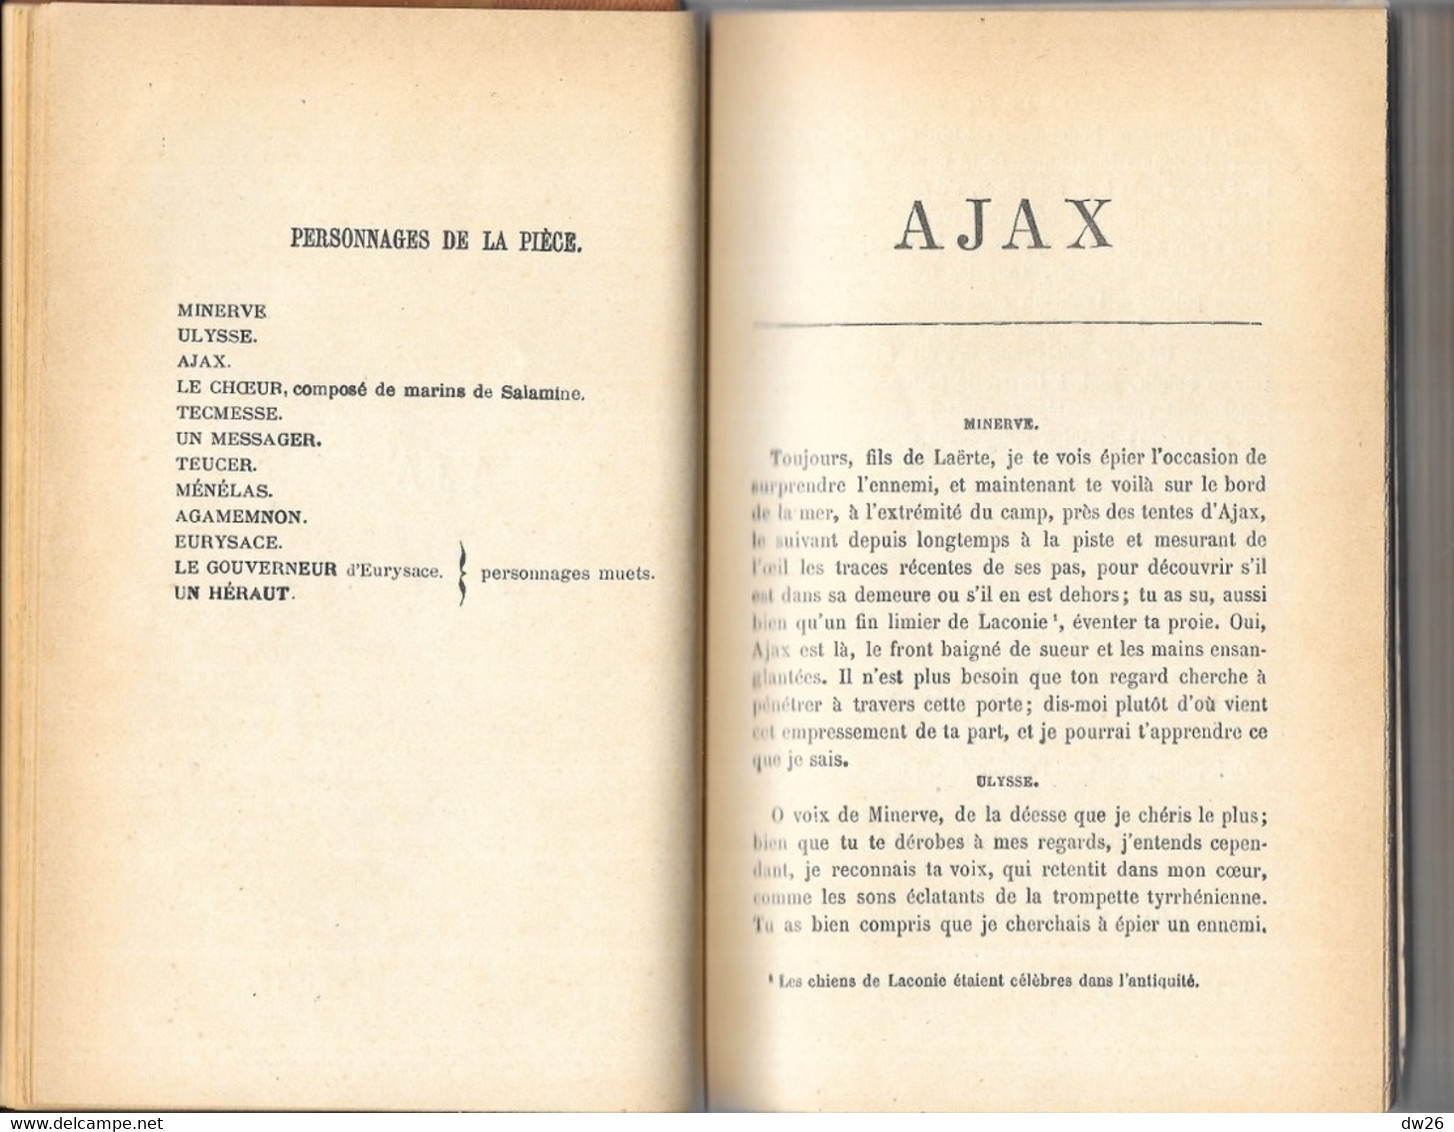 Livre Relié: Le Théâtre De Sophocle (Ajax, Electre, Antigone, Oedipe Roi...) Traduction Louis Humbert 1883 - Interieurdecoratie